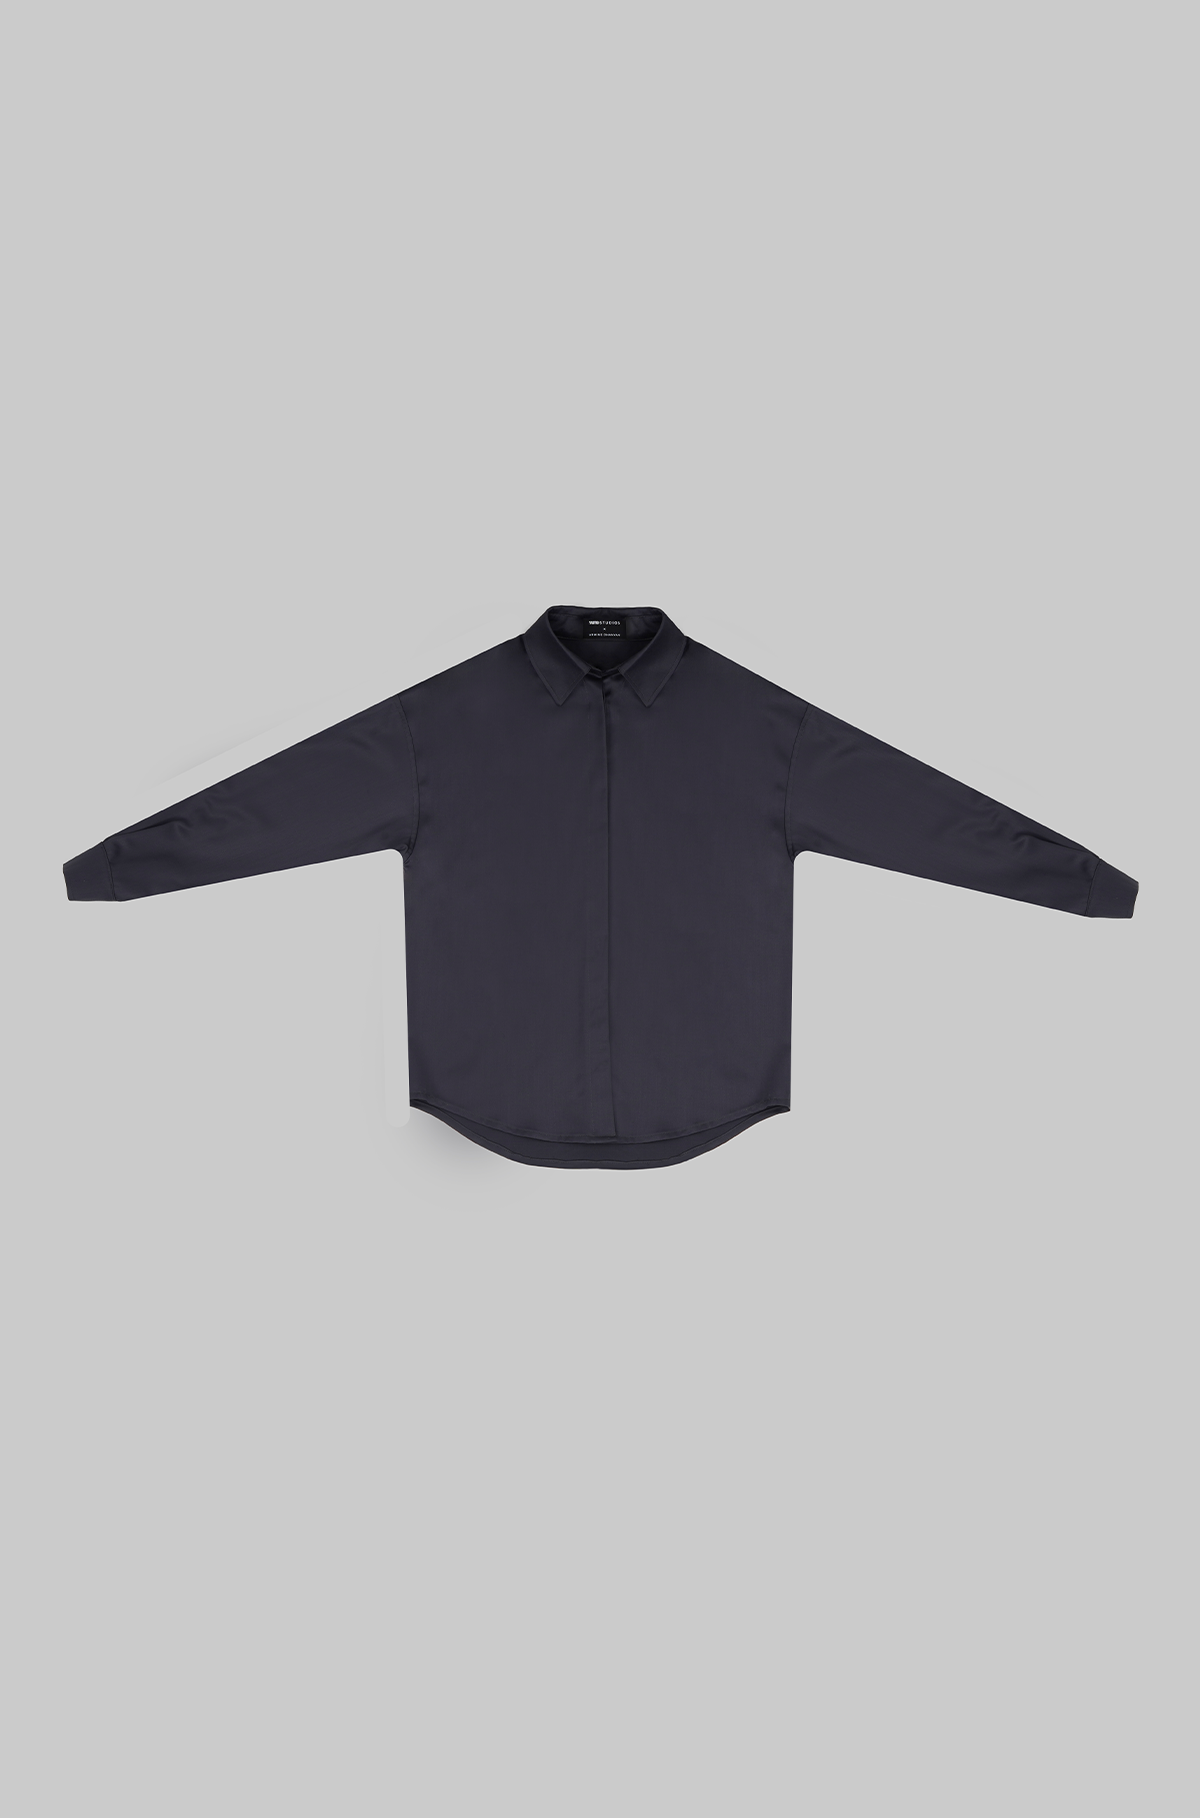 Dark gray unisex shirt for pre-order